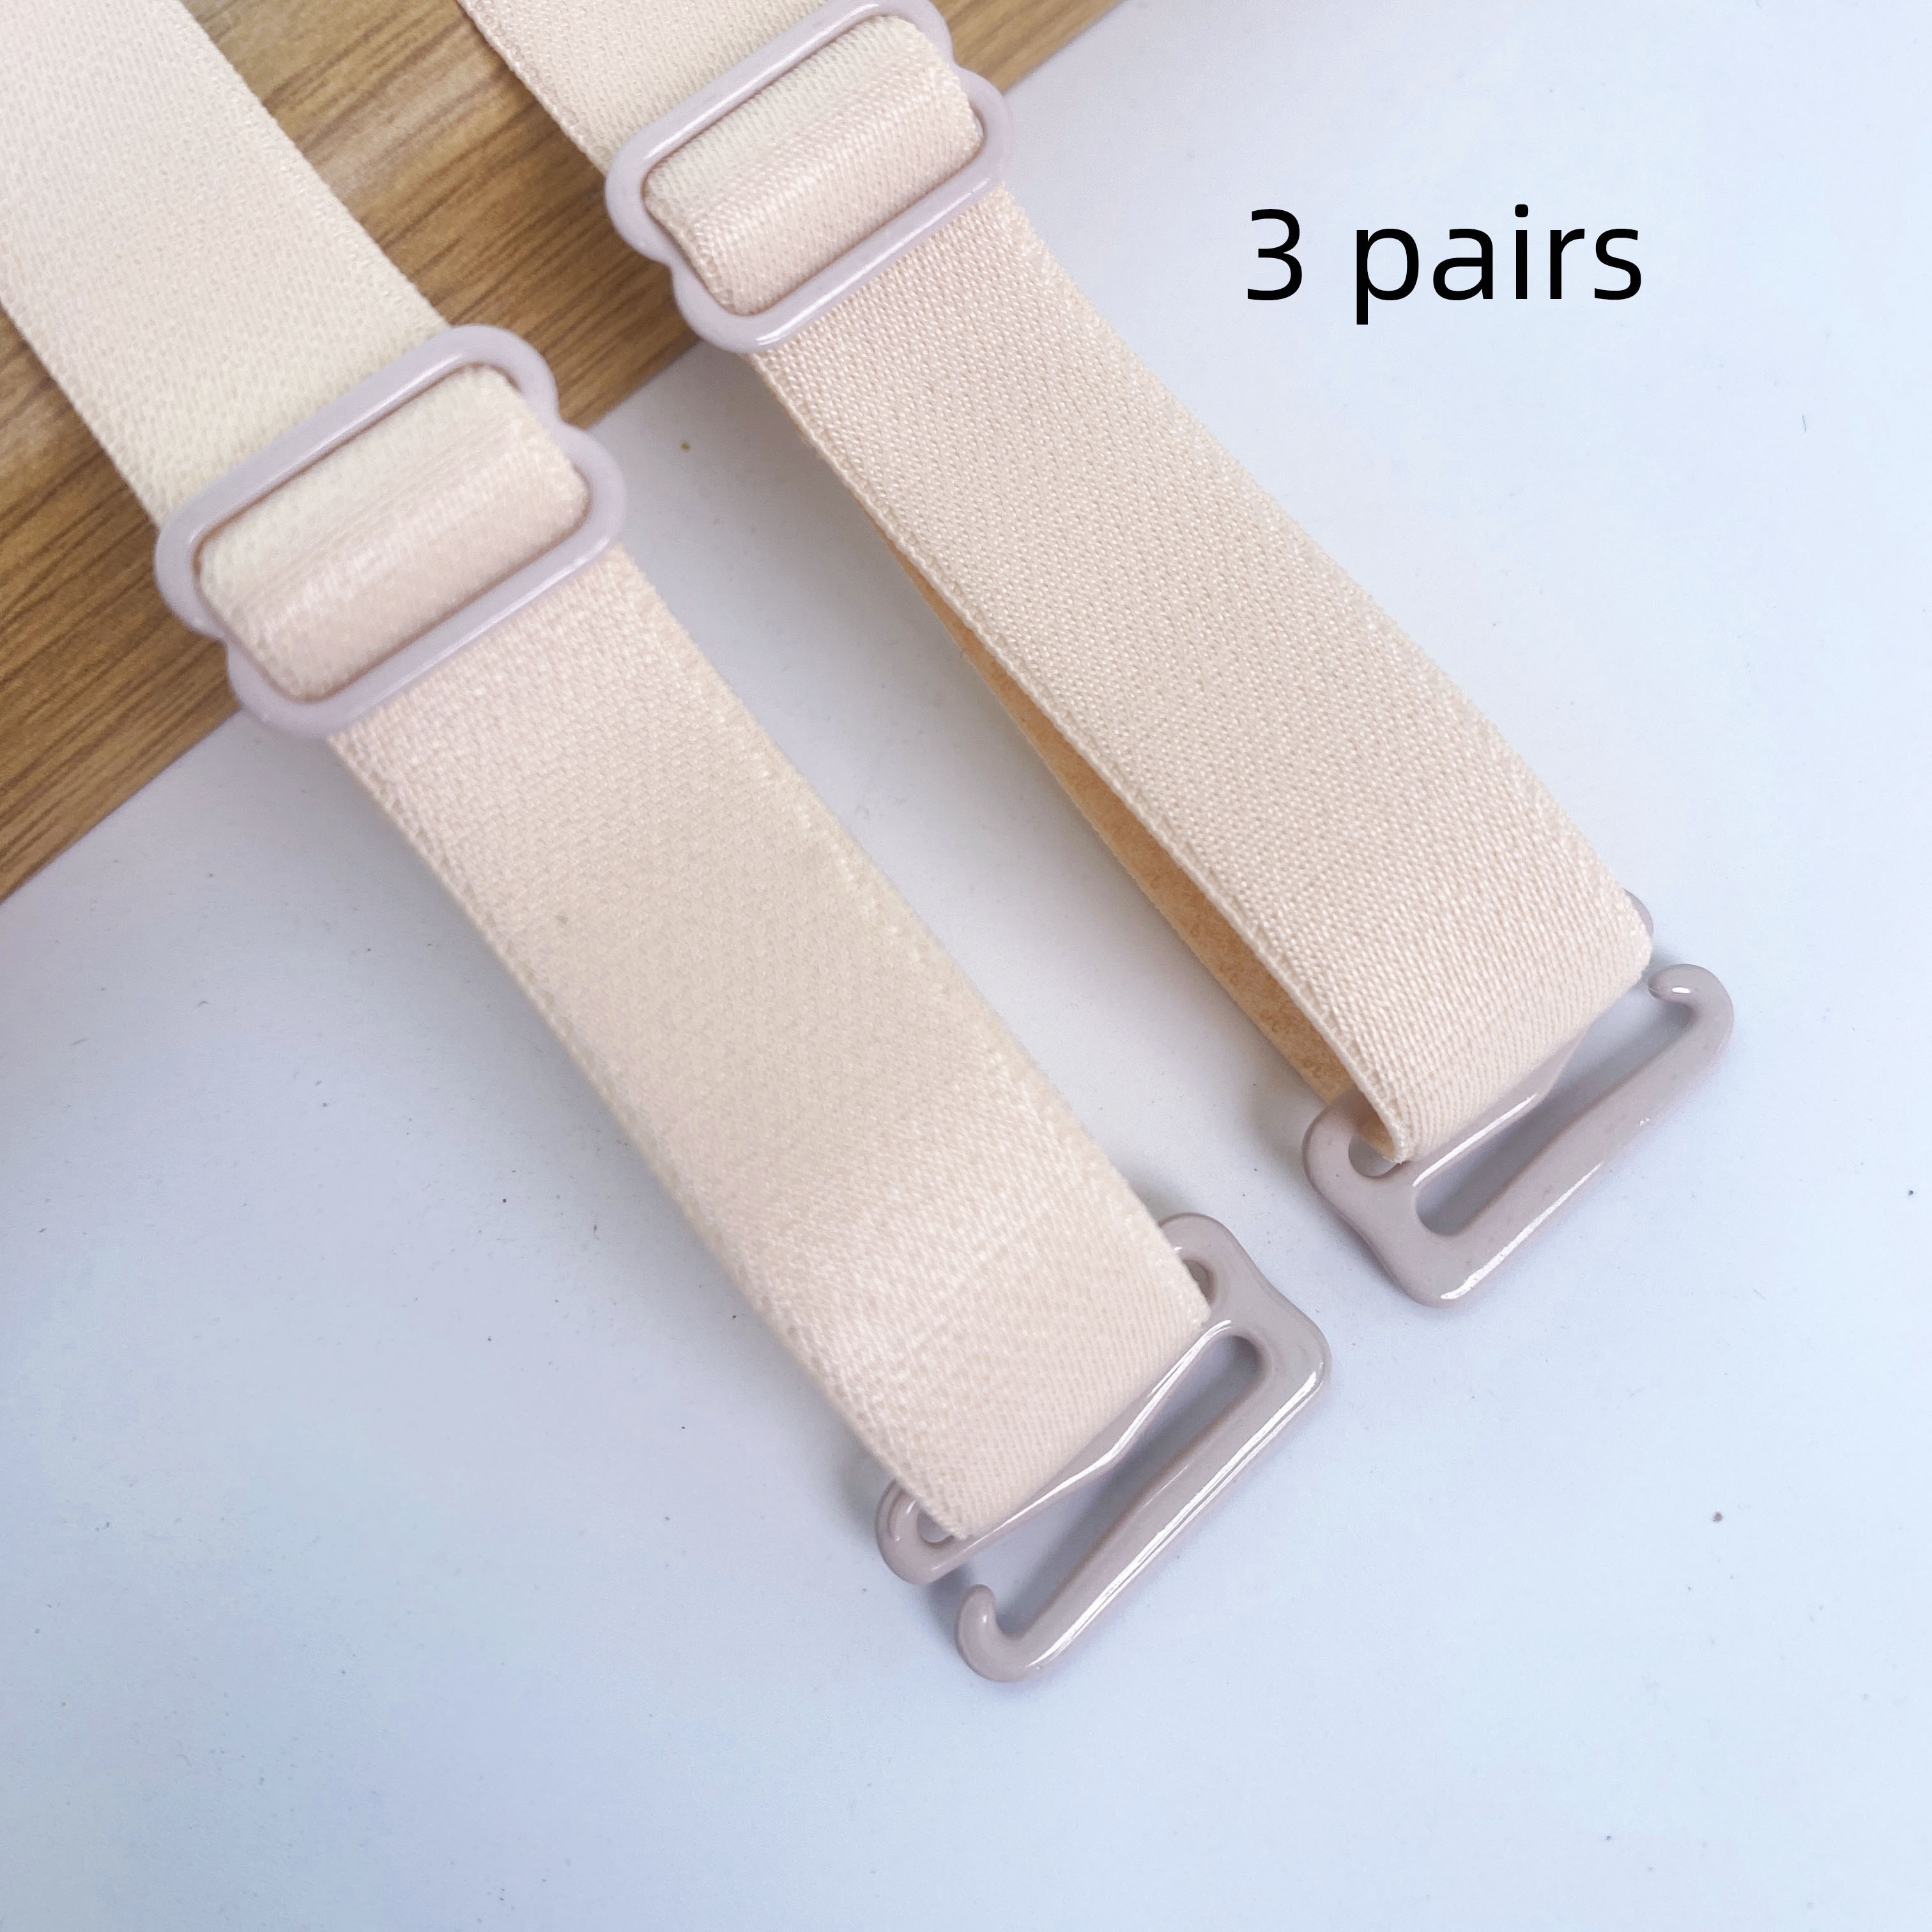 Lystaii 9 Pair Shoulder Bra Straps, Adjustable Non-Slip Bra Straps